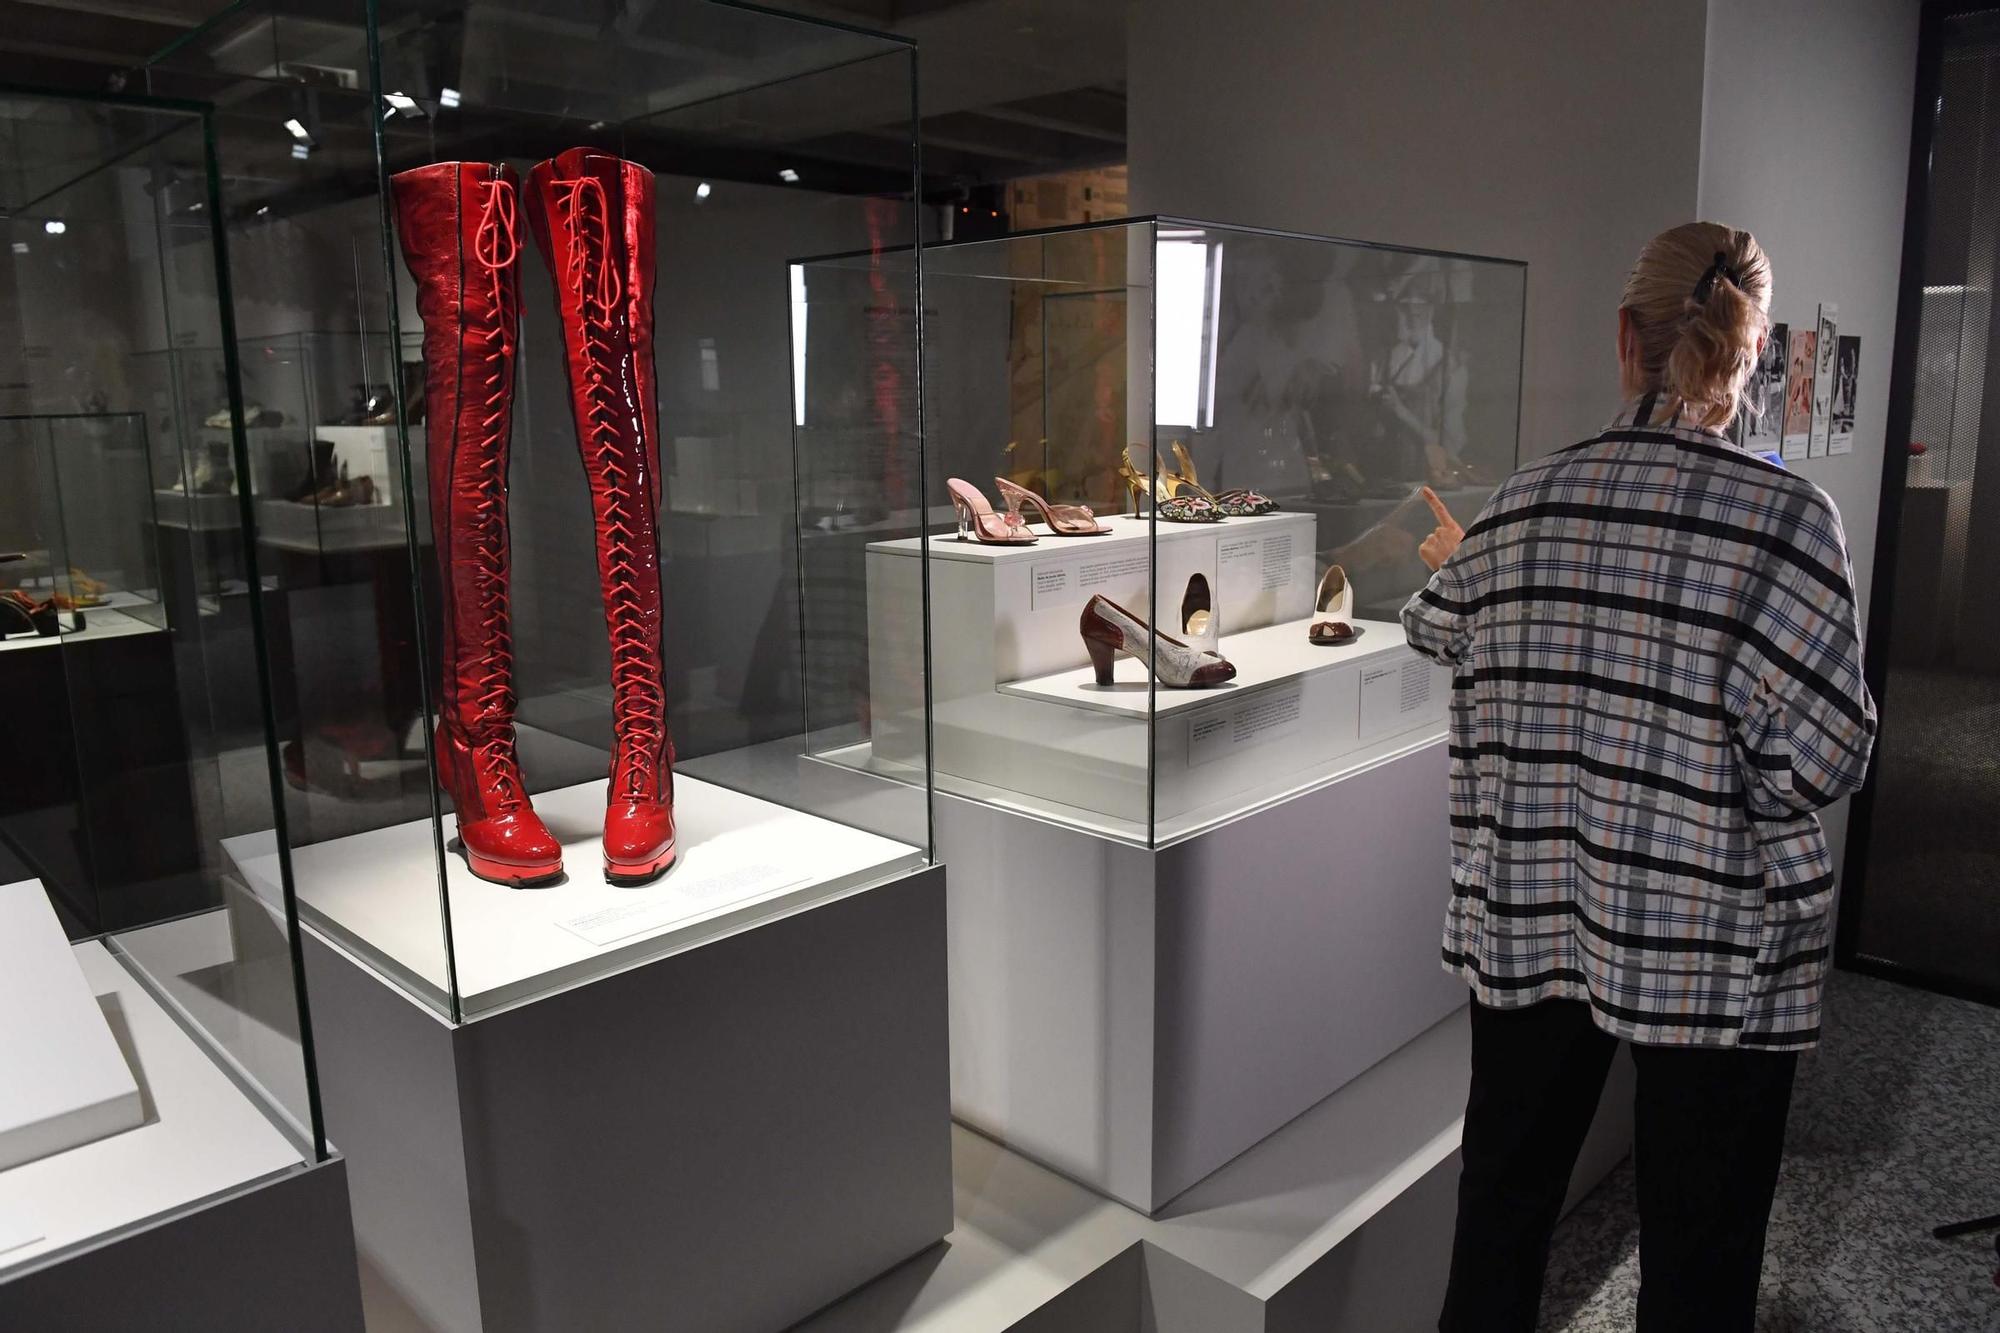 Presentada en A Coruña la exposición 'Walk this way', la colección privada de calzado histórico de Stuart Weitzman